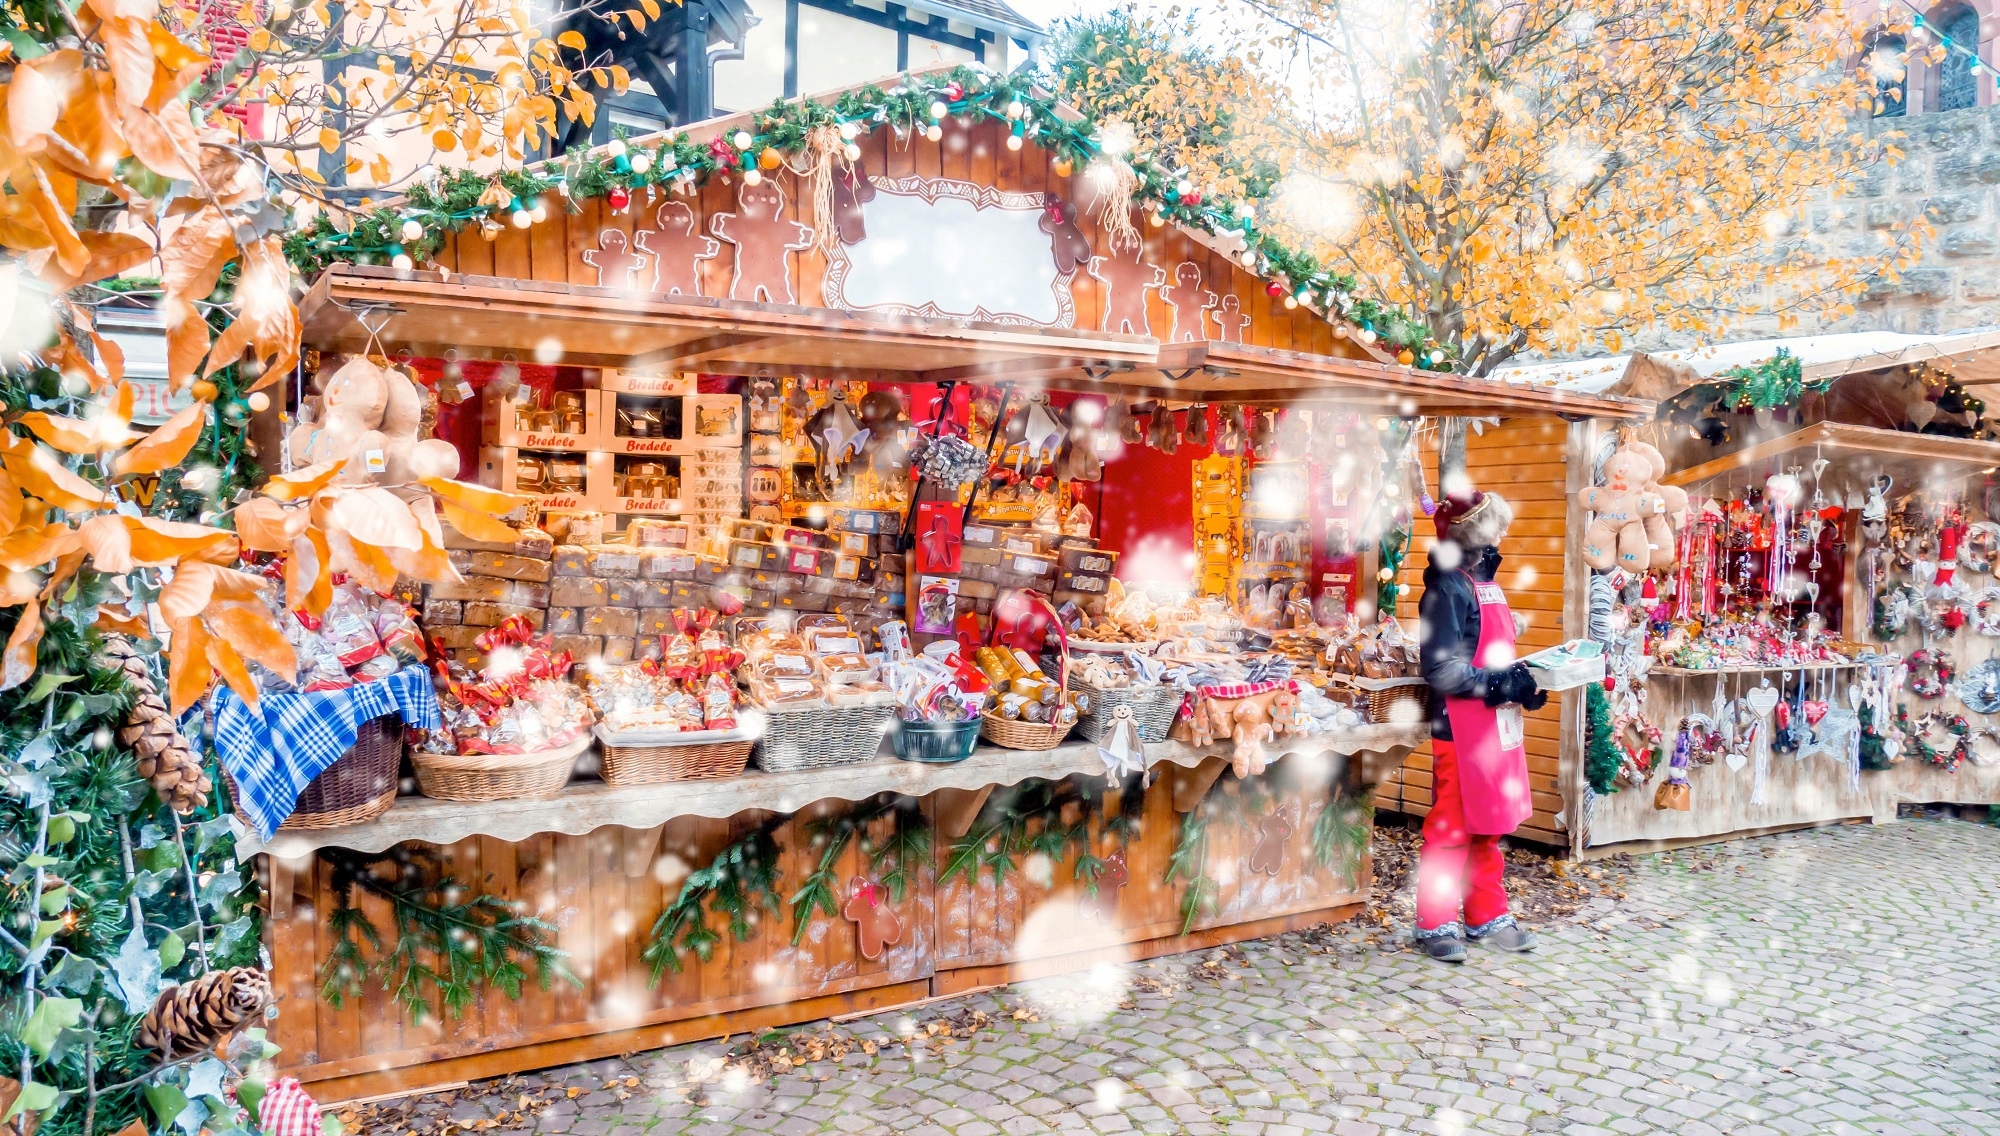 Le Marché Off, l'autre marché de Noël de Strasbourg